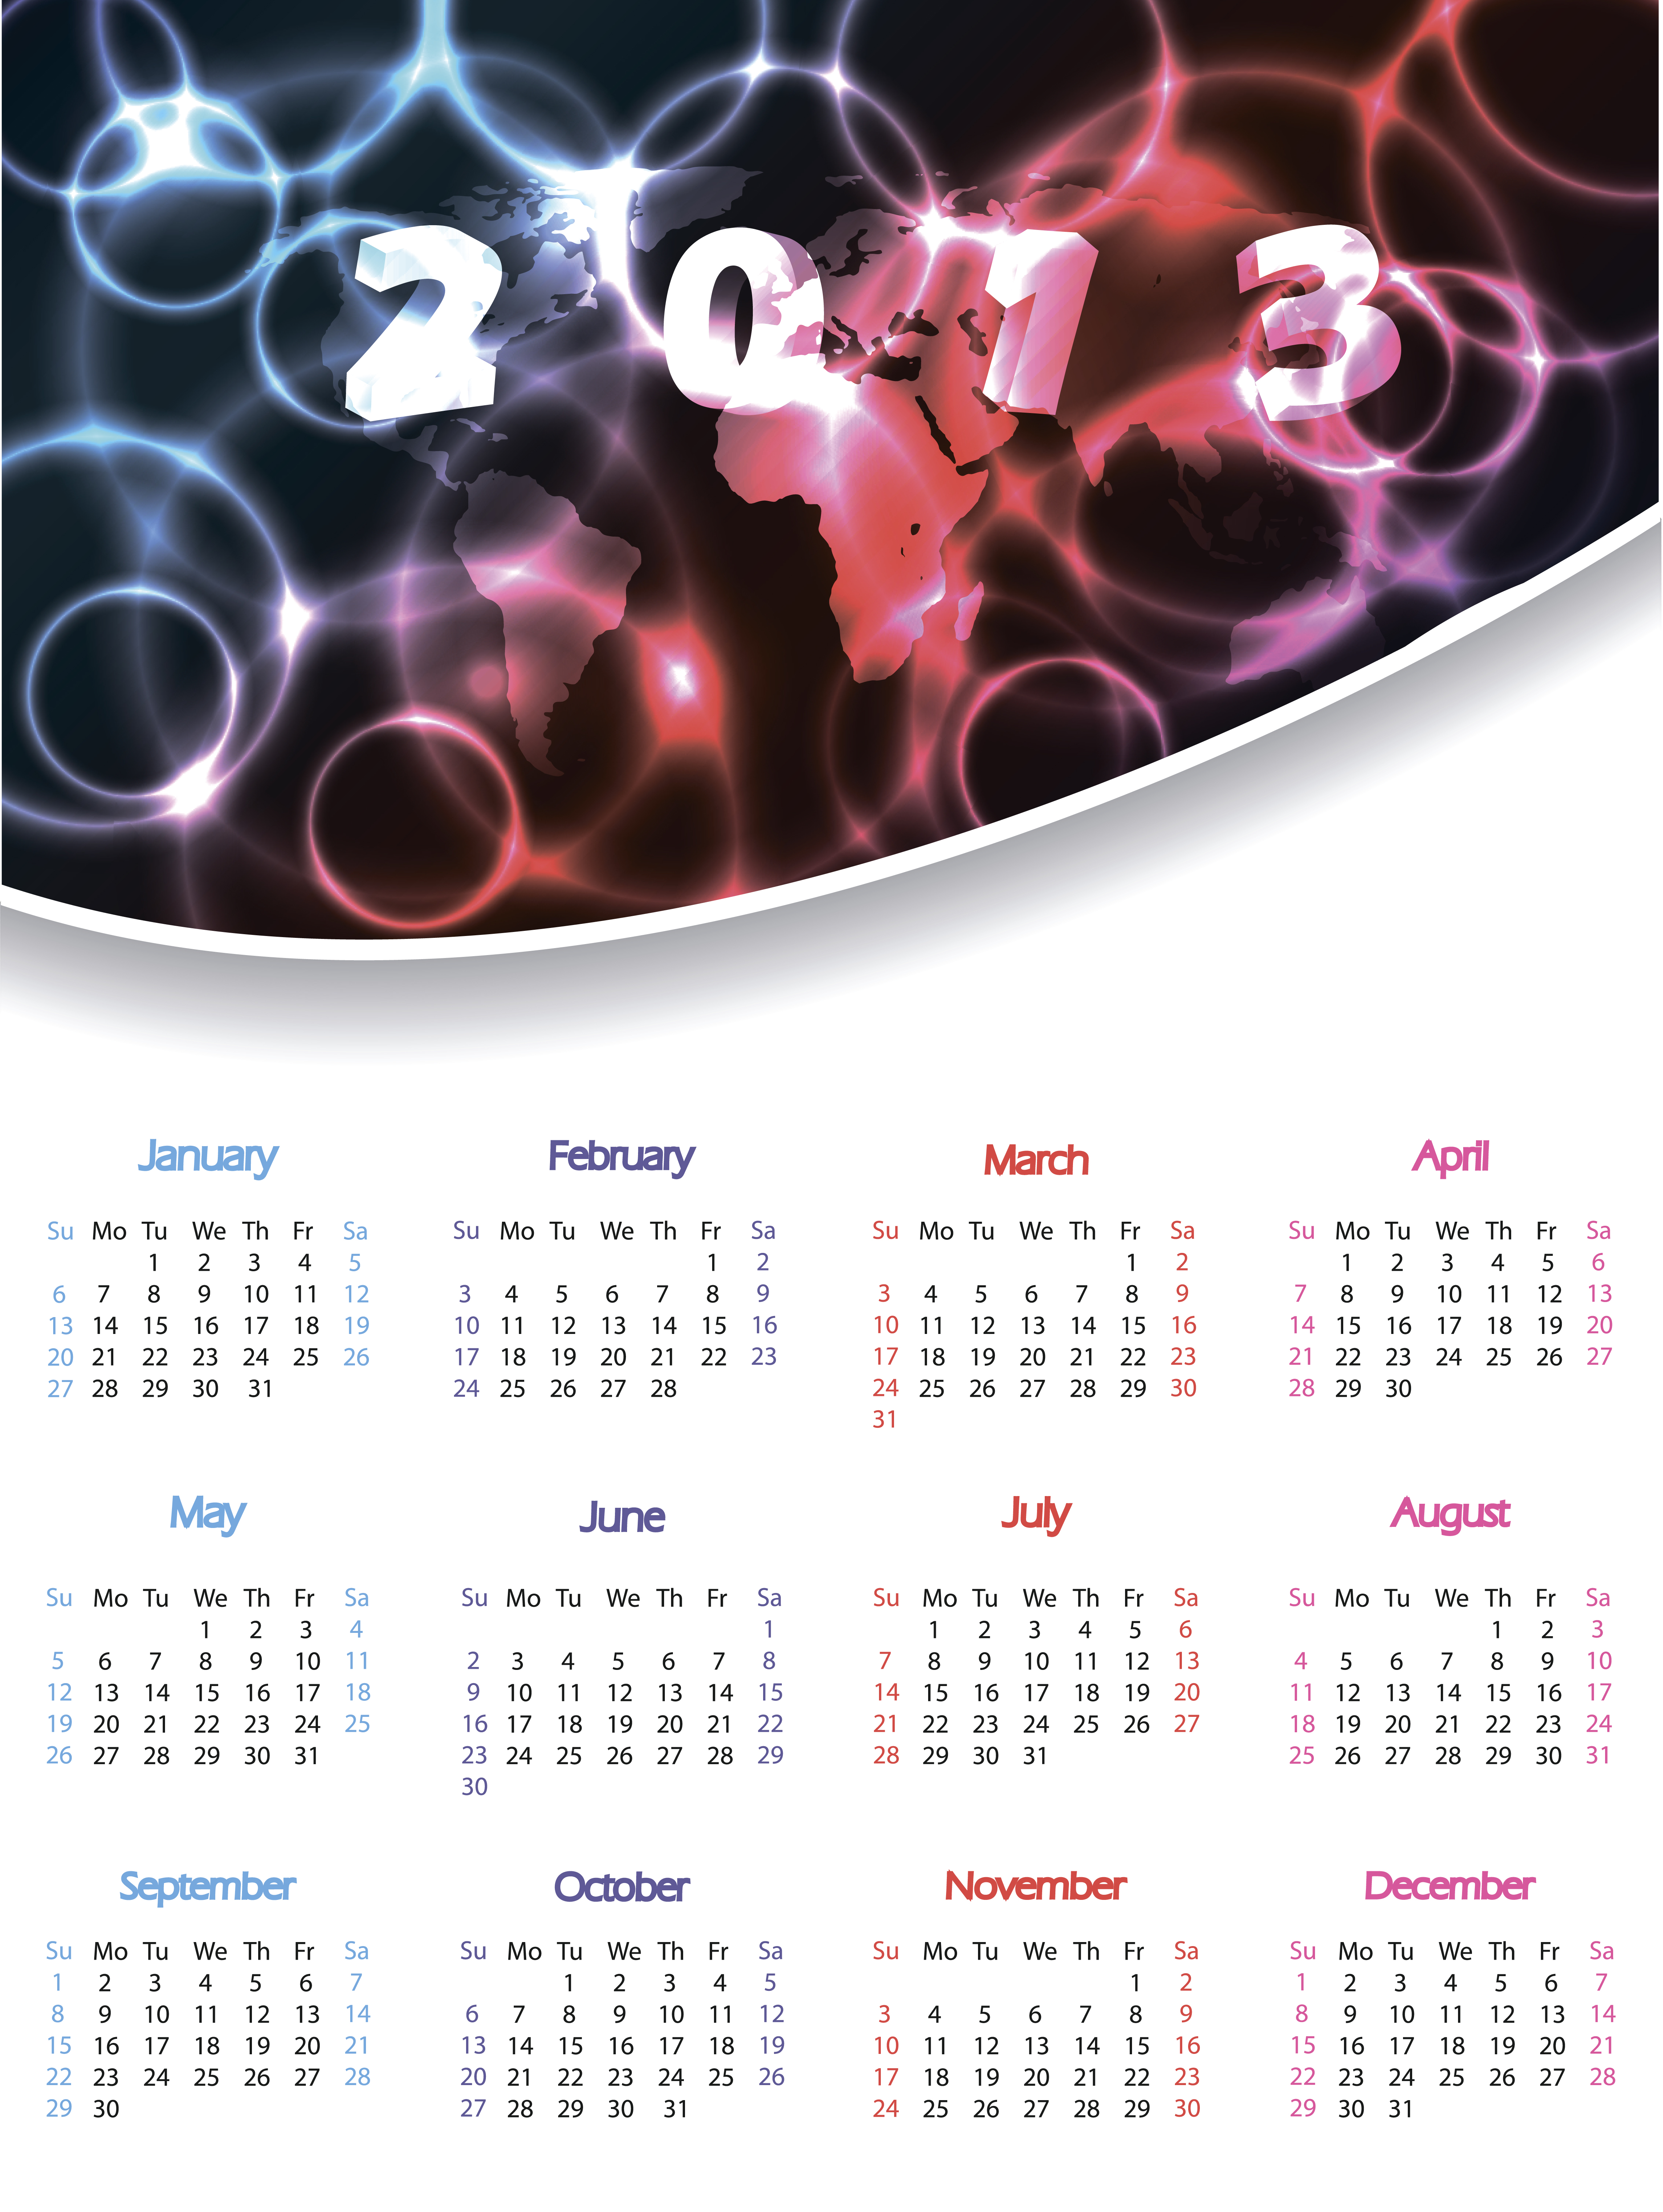 kalendarze 2013 - kalendarz 2013 18.jpg